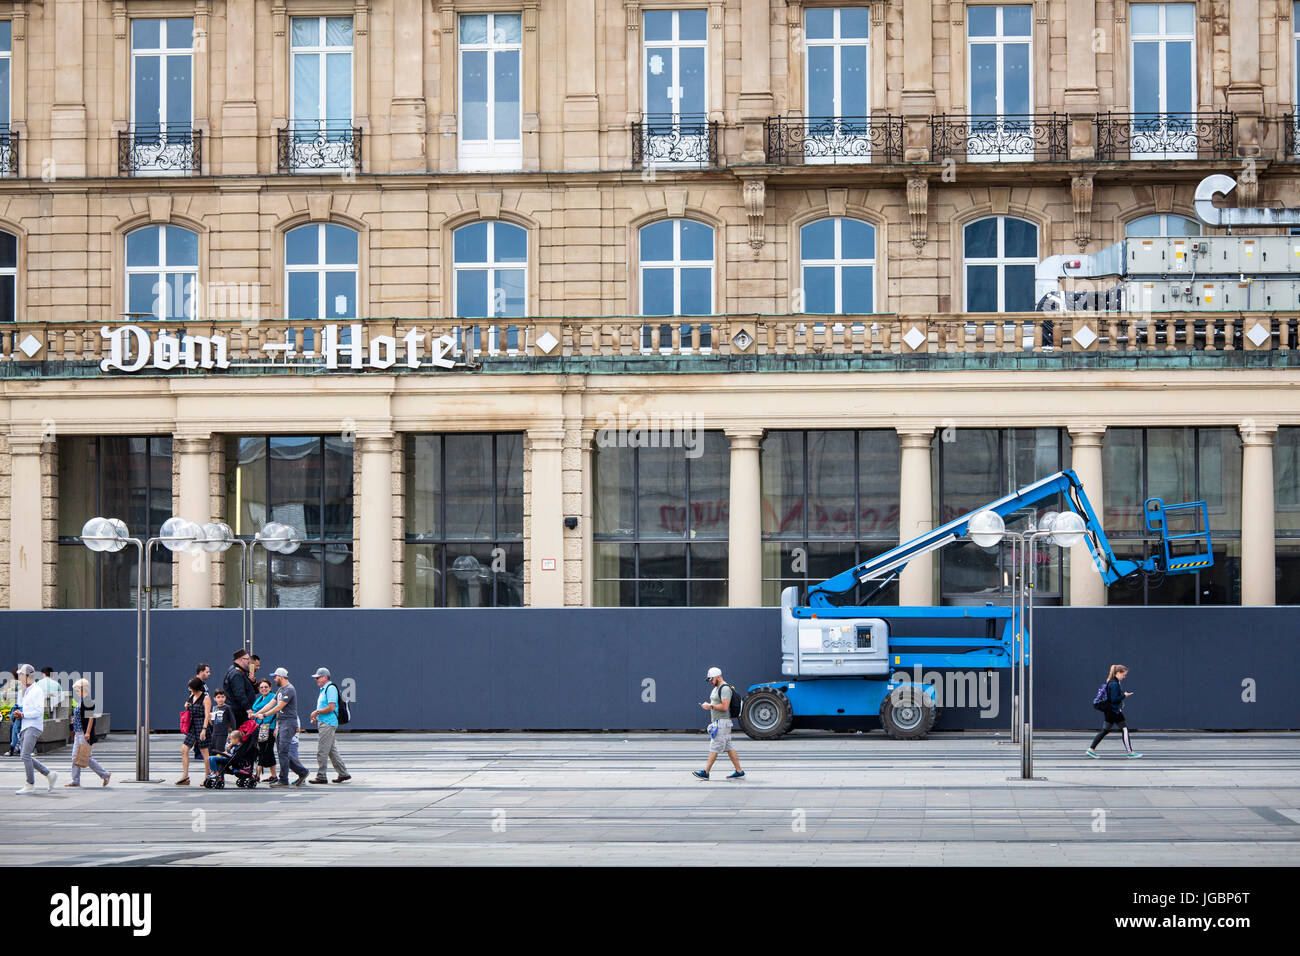 Allemagne, Cologne, plate-forme de travail mobile en face de l'Hôtel Dom abandonnés près de la cathédrale, l'hôtel est depuis des années une restructuration ruine. Banque D'Images